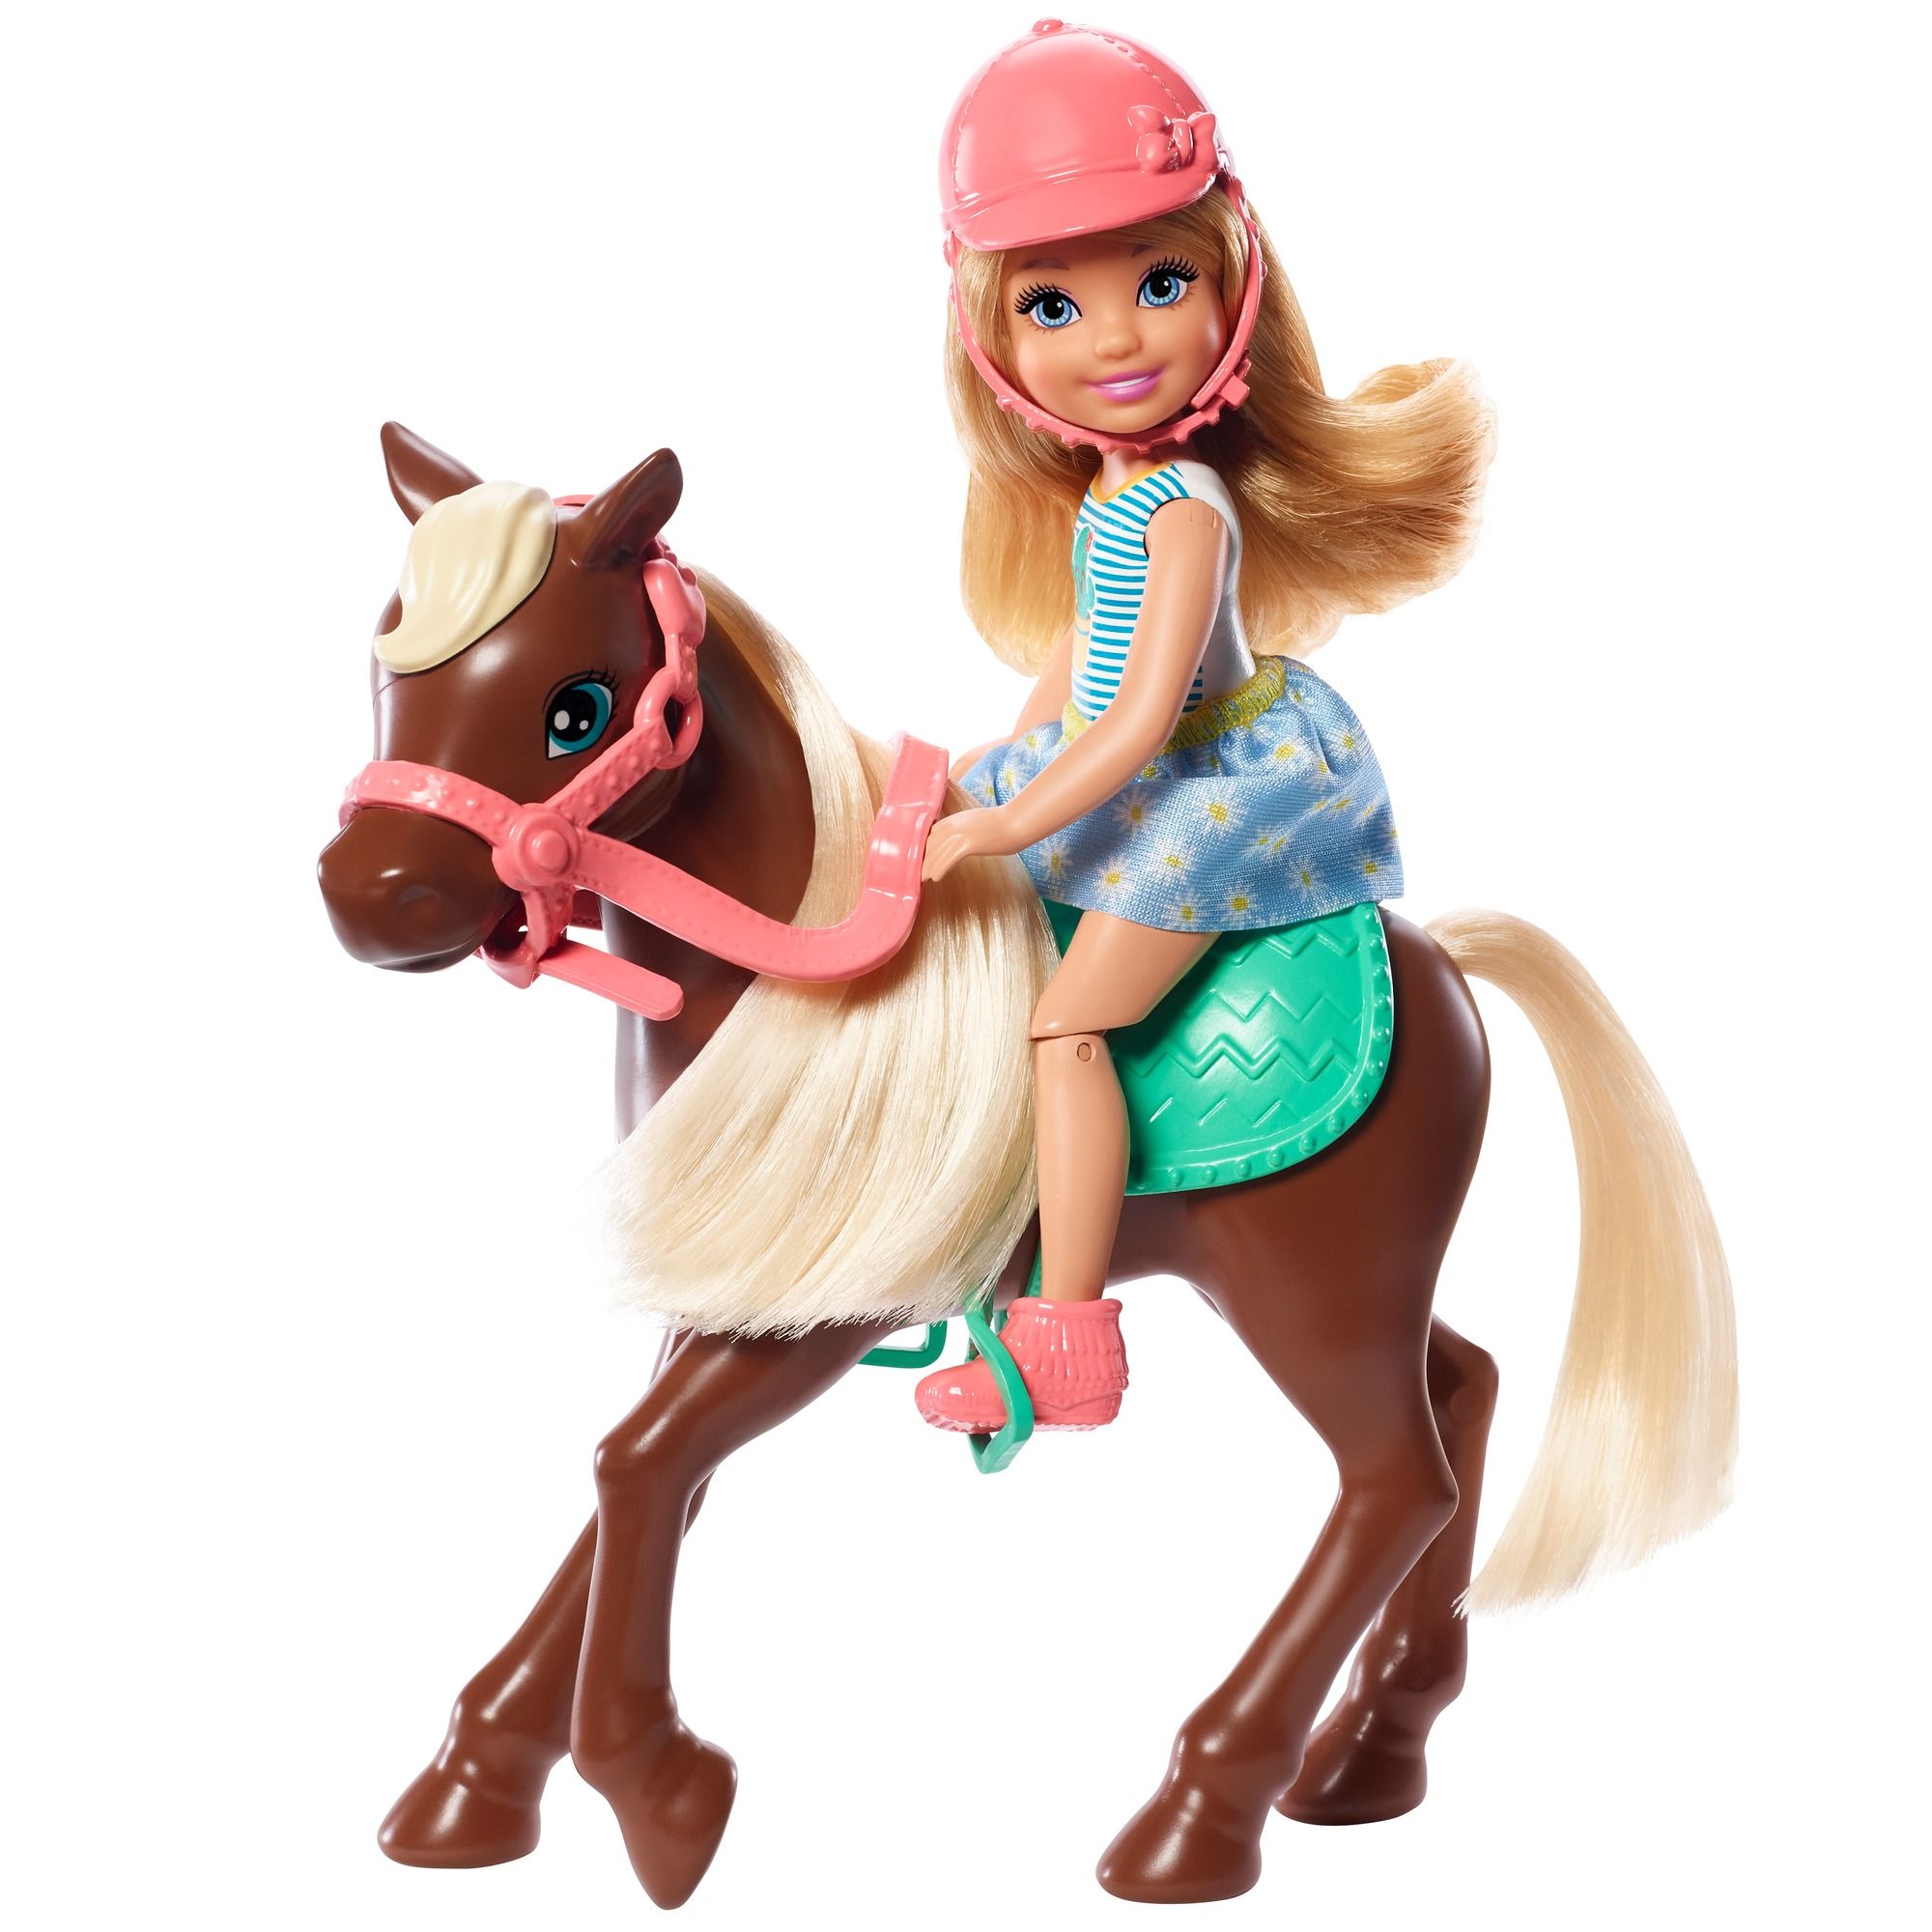 Bemiddelaar Vijftig punt Paard en pop Barbie: Chelsea - Welpie Toys Heerlen